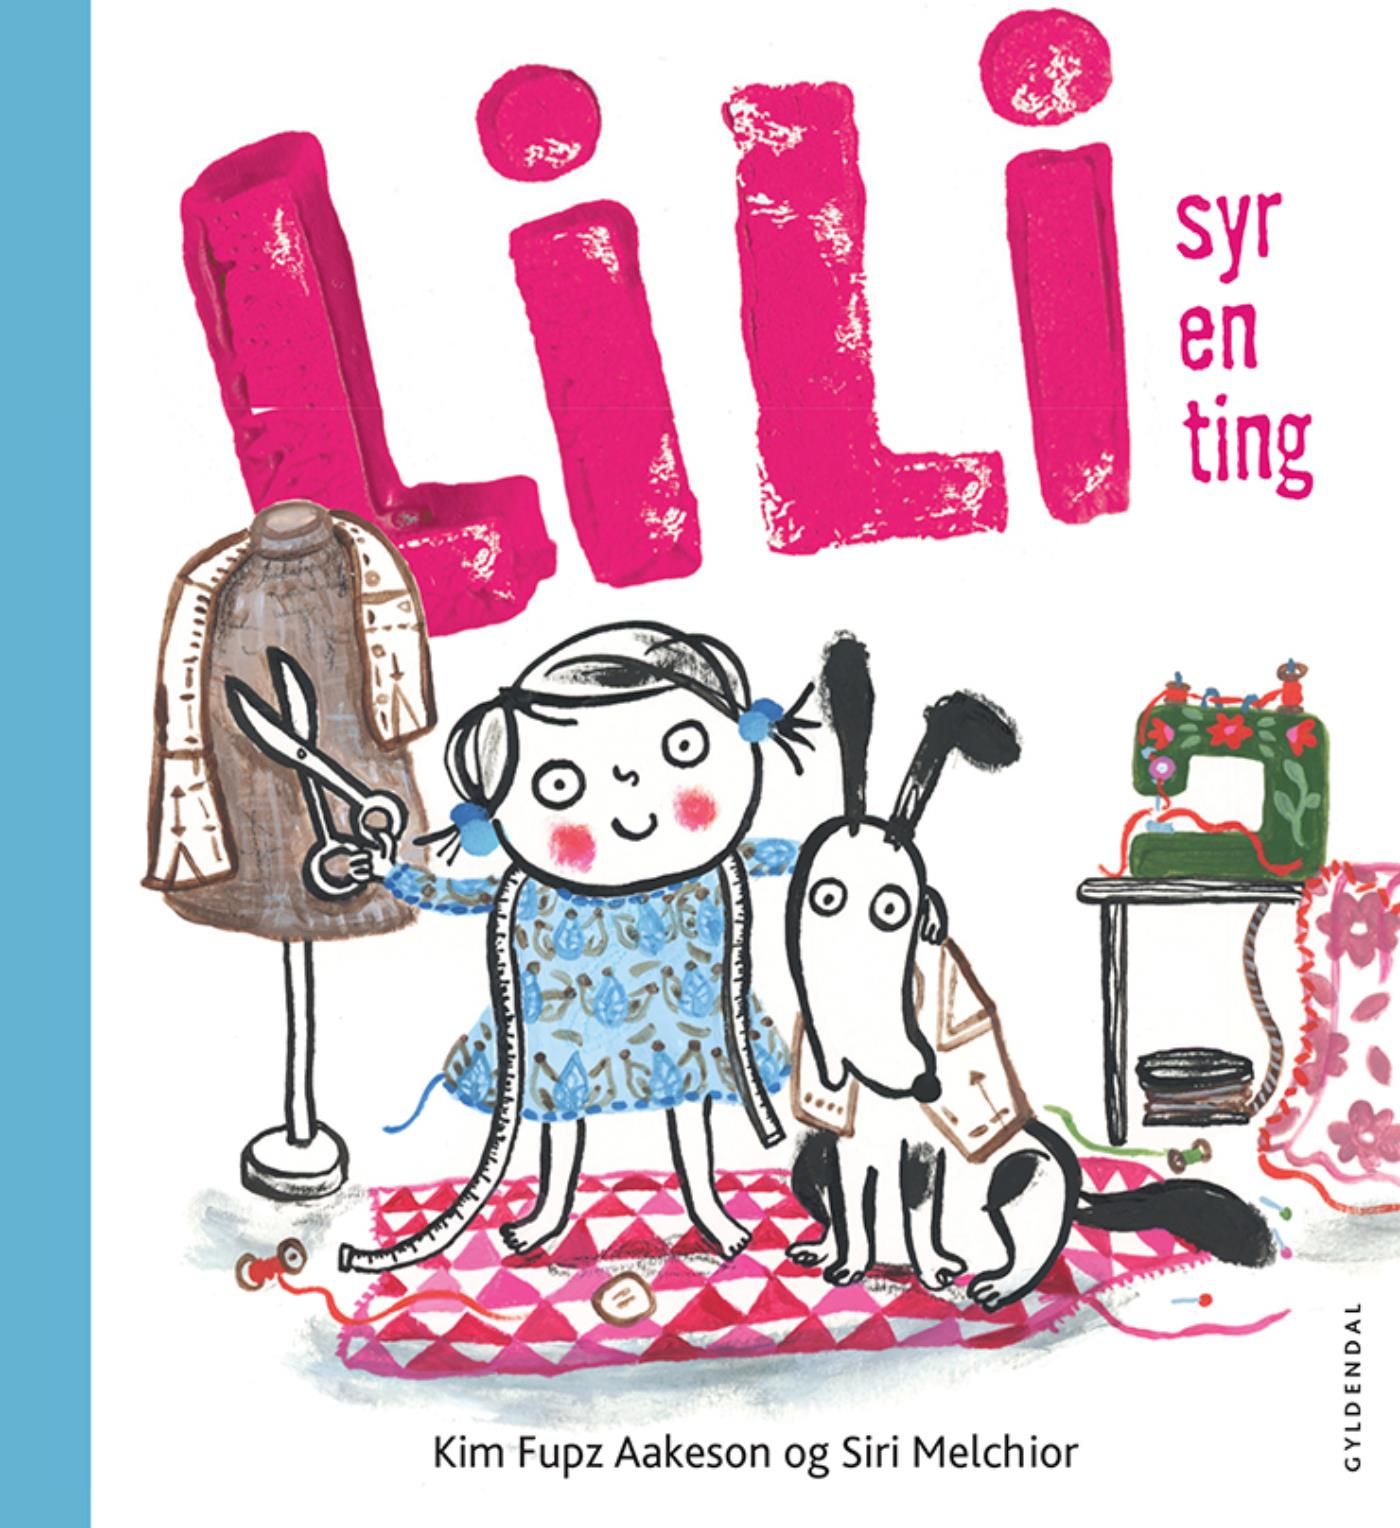 Lili syr en ting - Lyt&læs, eBook by Siri Melchior, Kim Fupz Aakeson